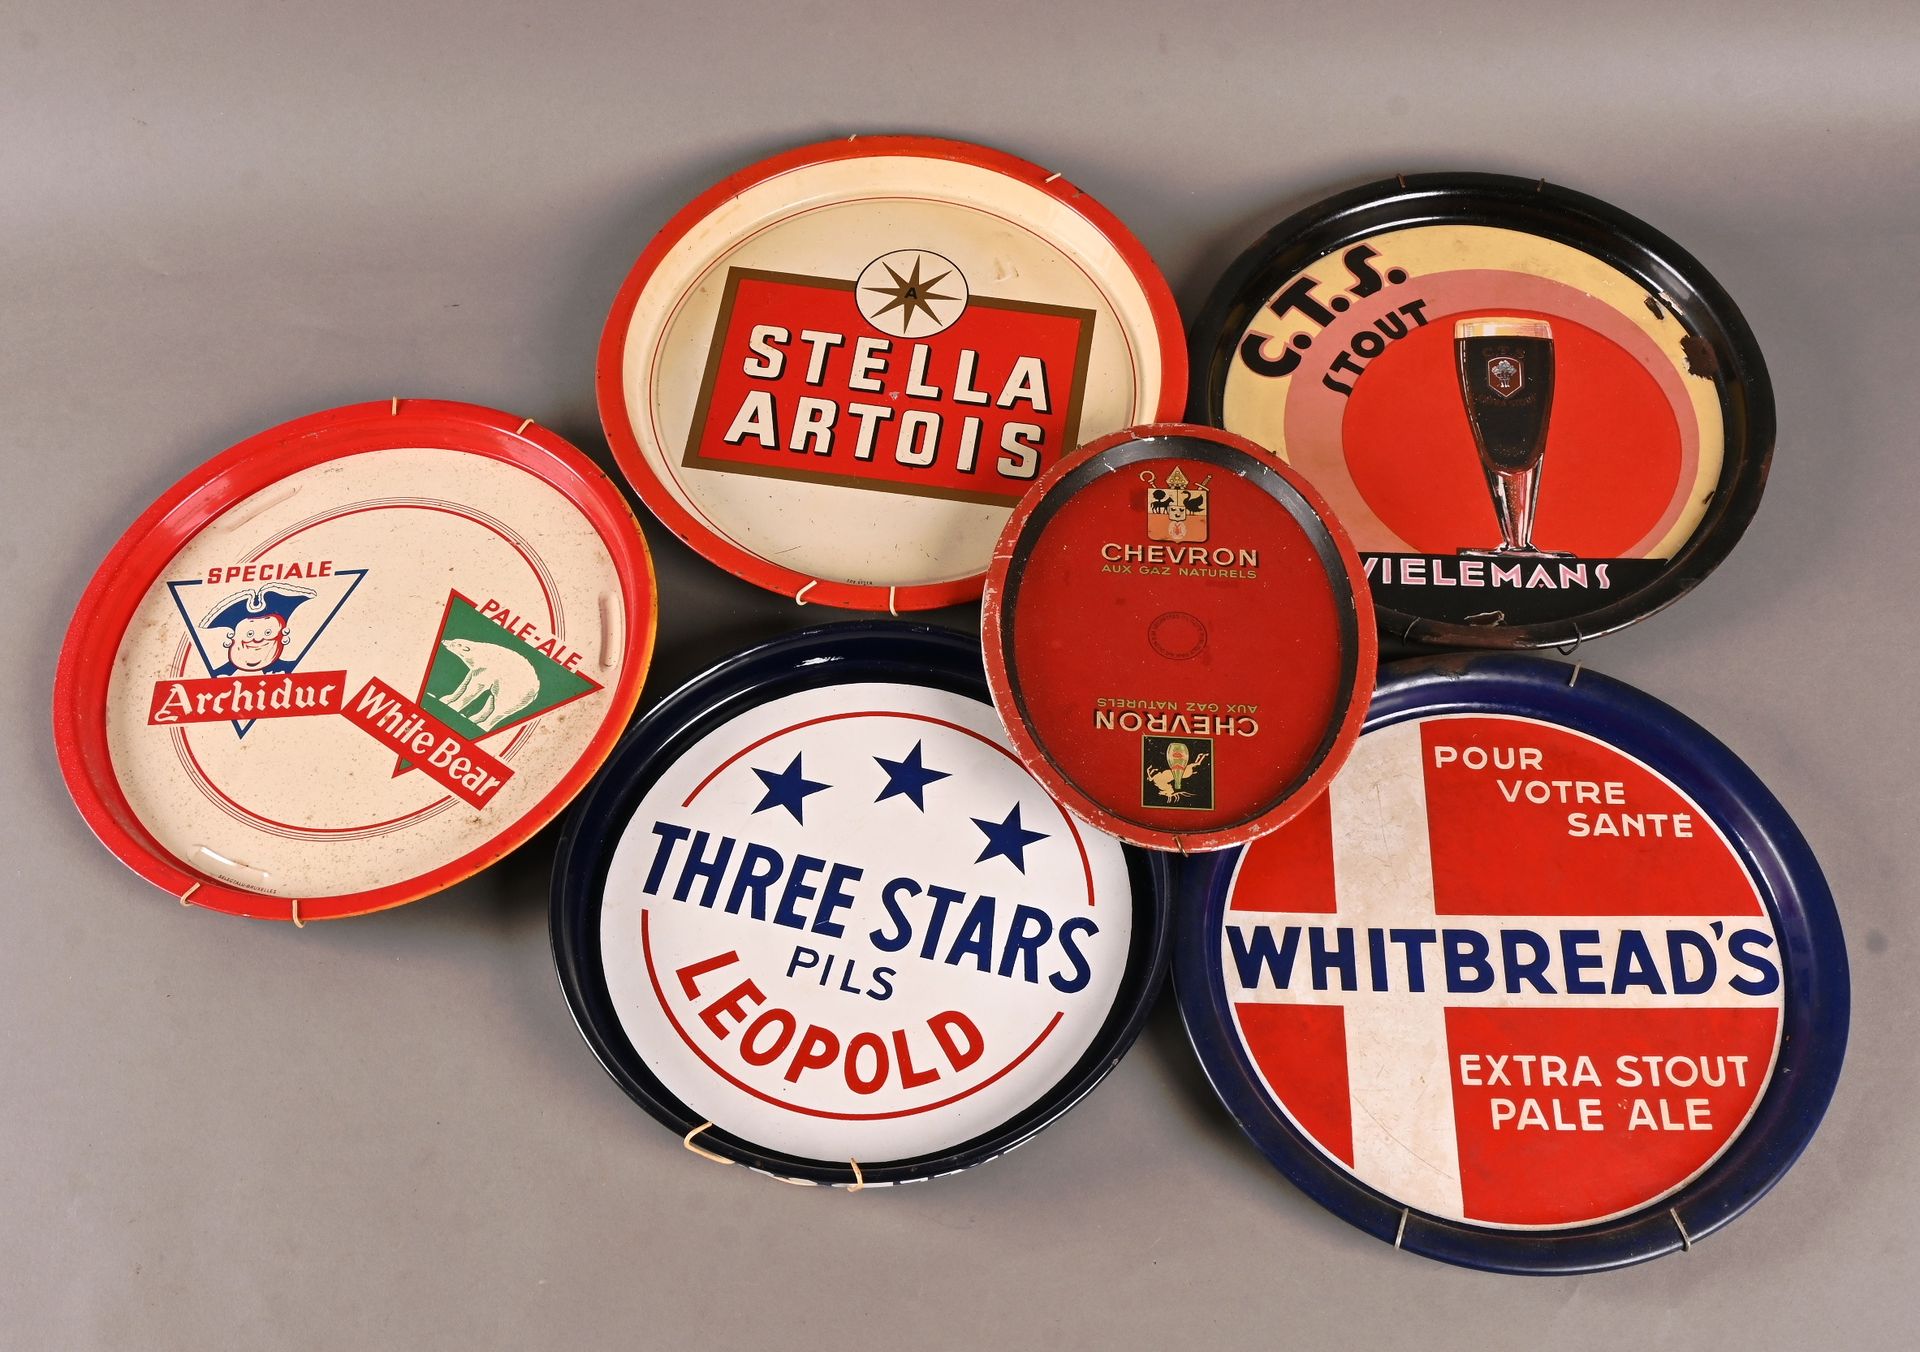 Lot de 6 plateaux publicitaires 一套6个广告盘
Whitbread, Wielemans, Stella Artois, Leo&hellip;